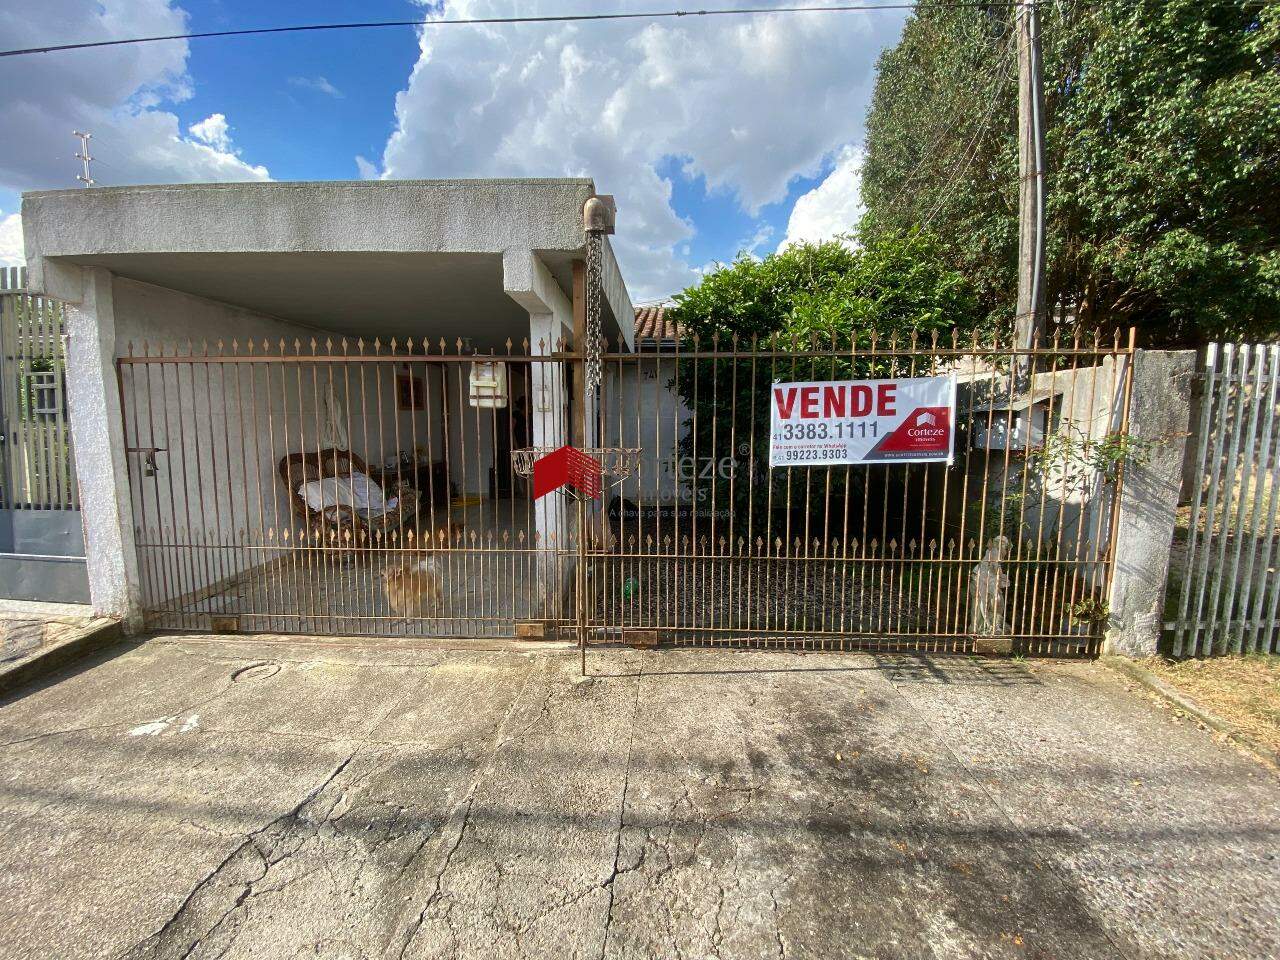 Excelente oportunidade!! Terreno à venda, em uma ótima localização no bairro Cruzeiro em São José dos Pinhais